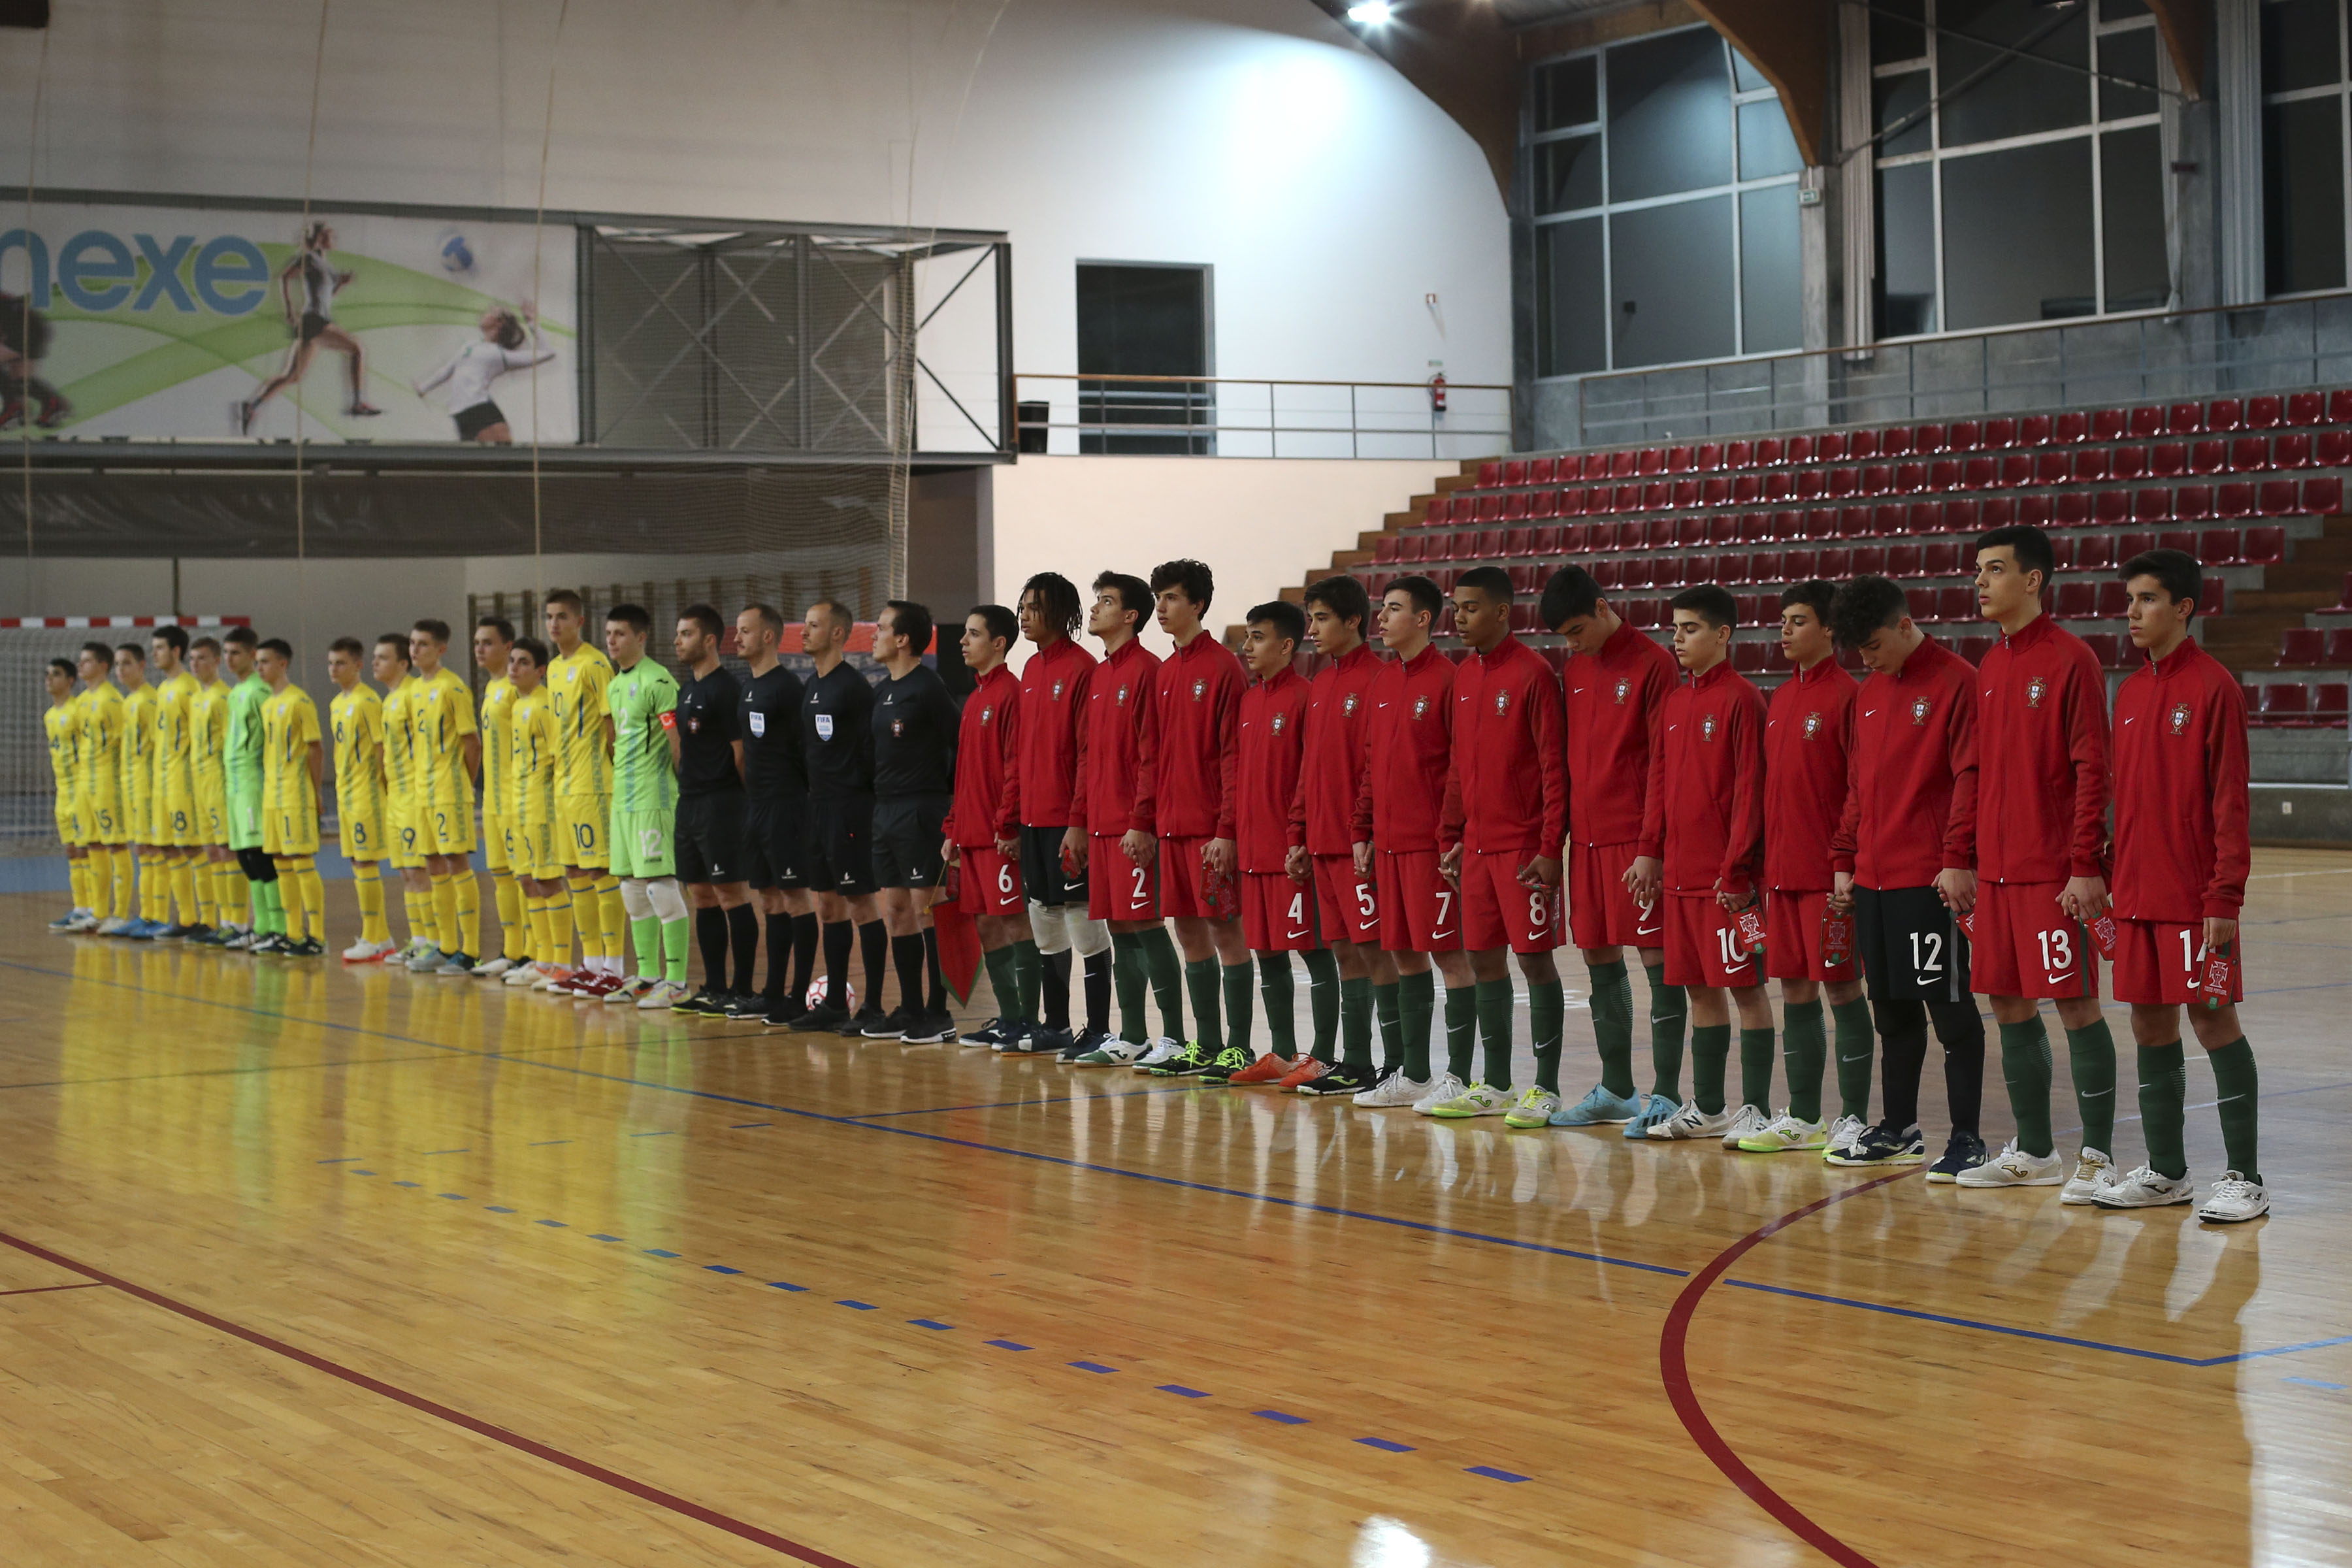 Jogos da Selecção Nacional de Futsal Masculino Sub-17 em Viana do